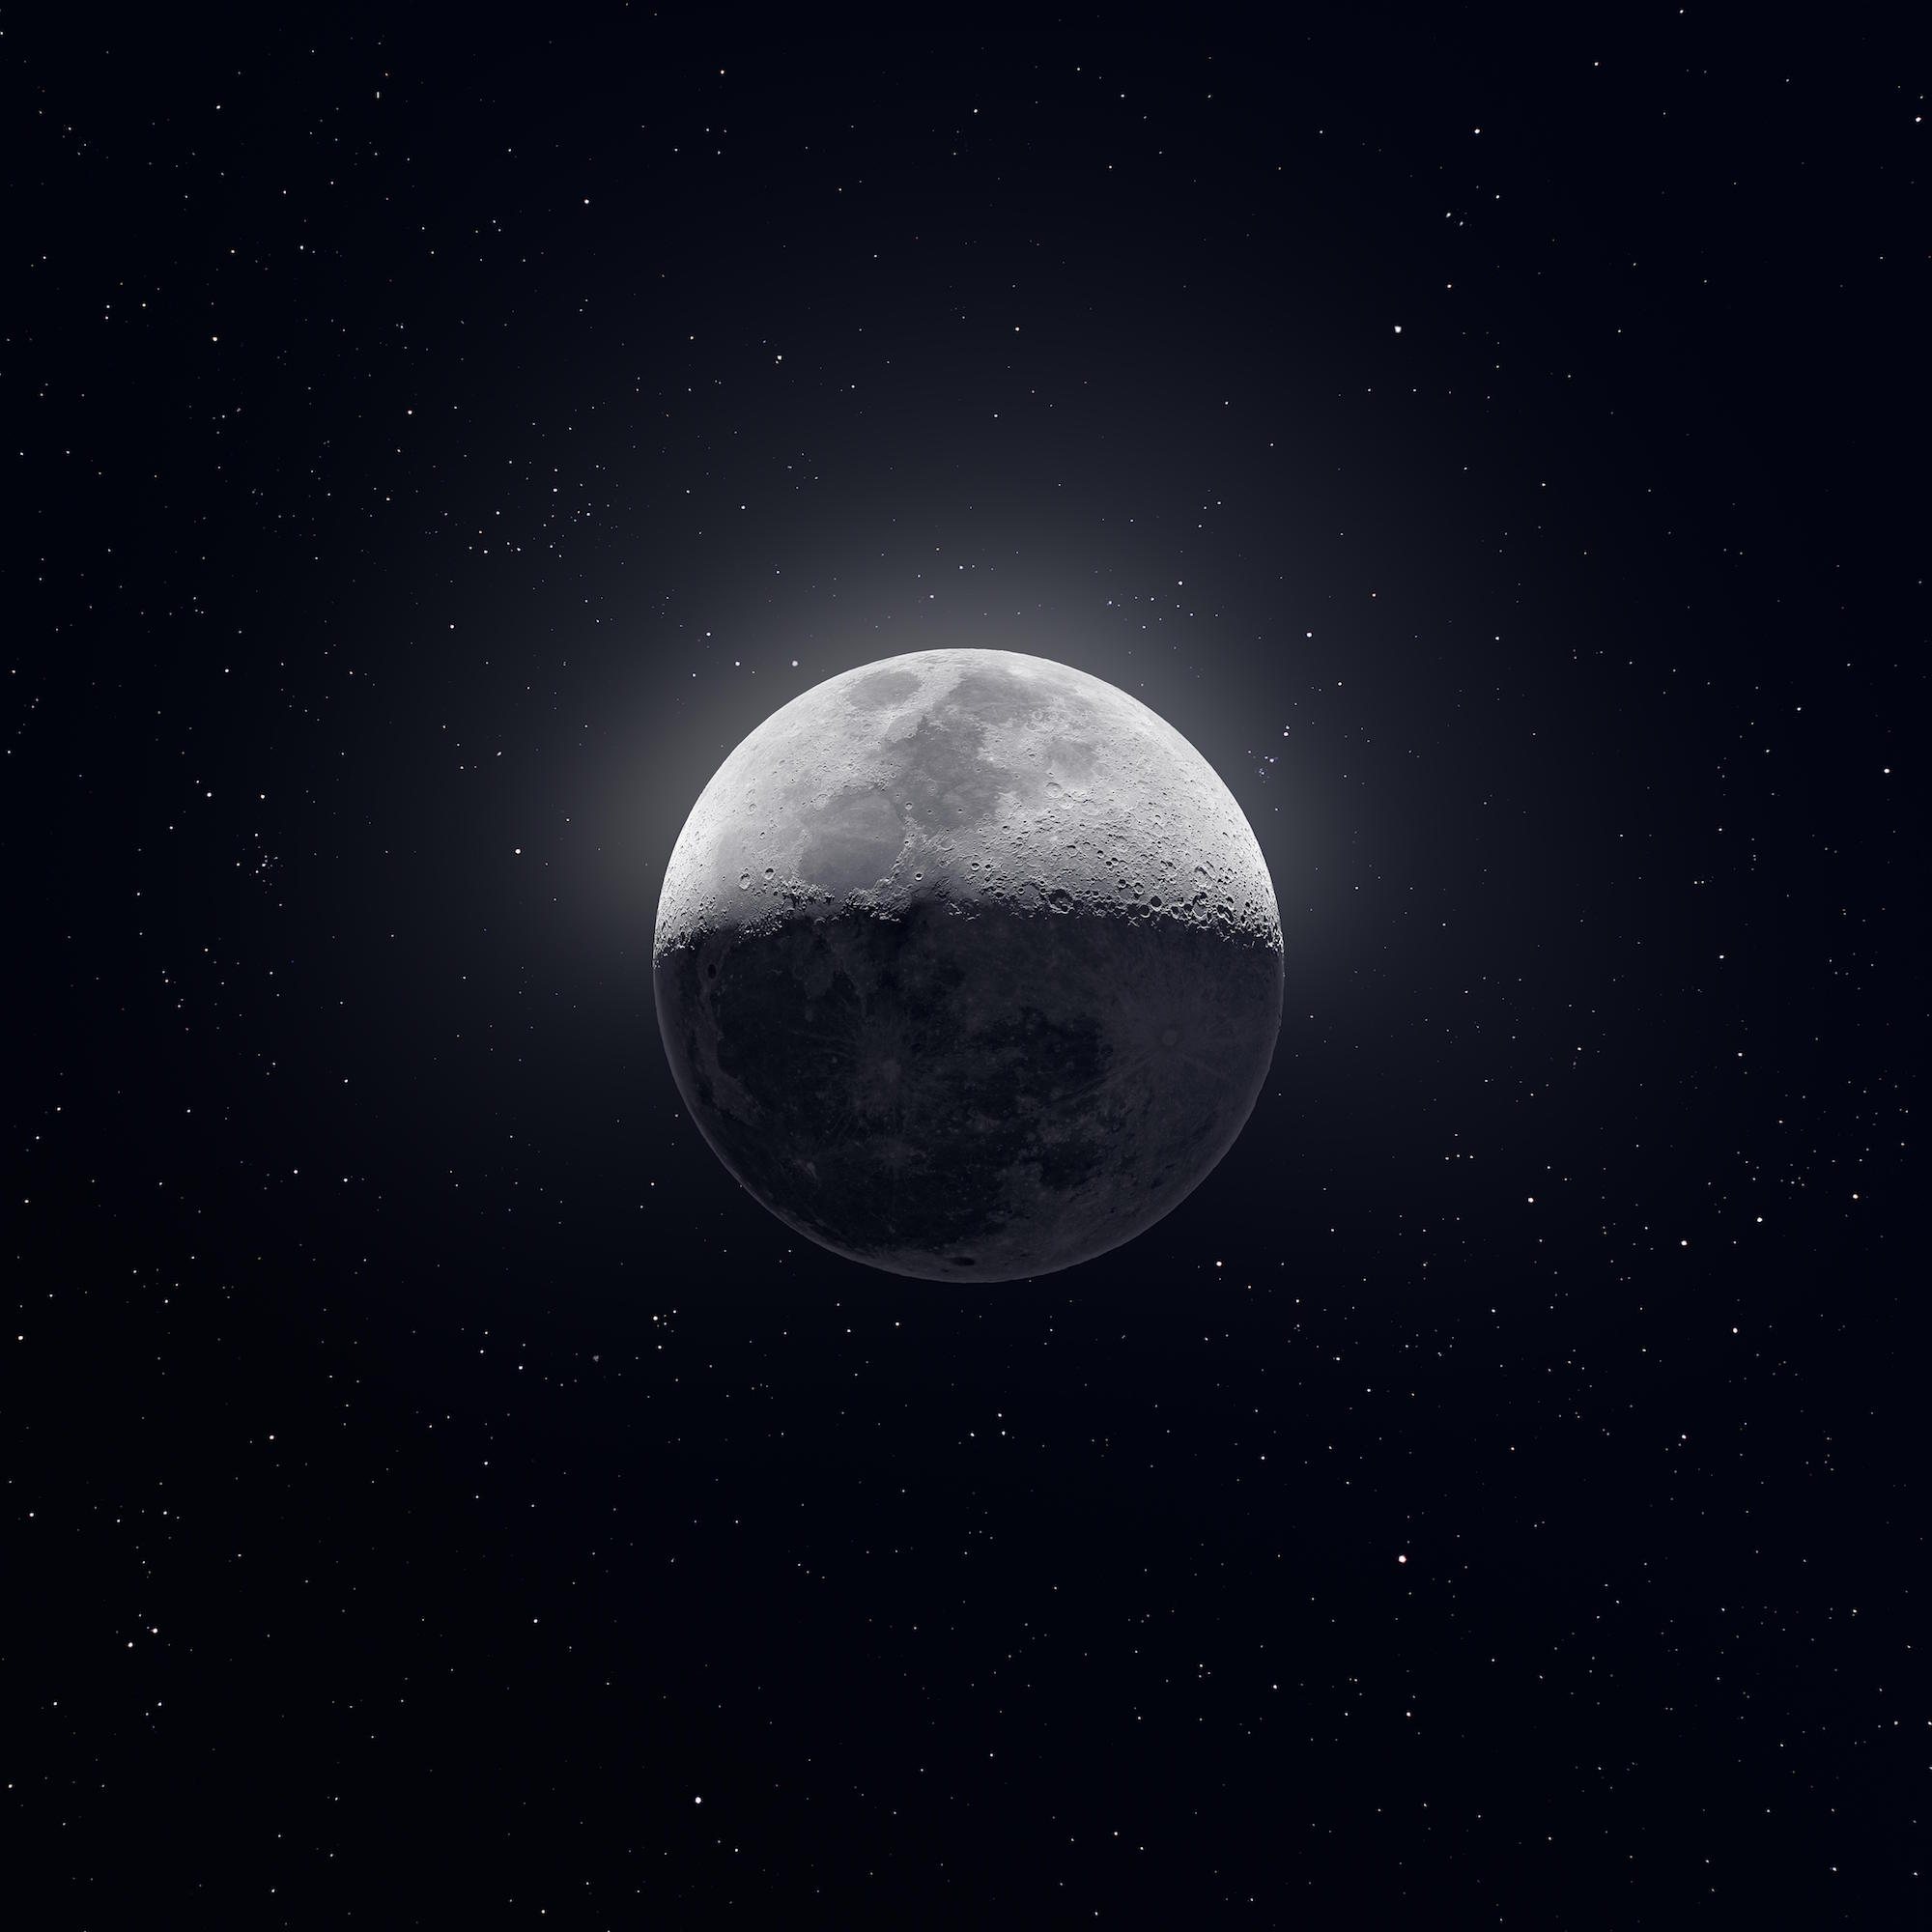 50 000 images combinées : la lune en ultra haute résolution – La boite verte